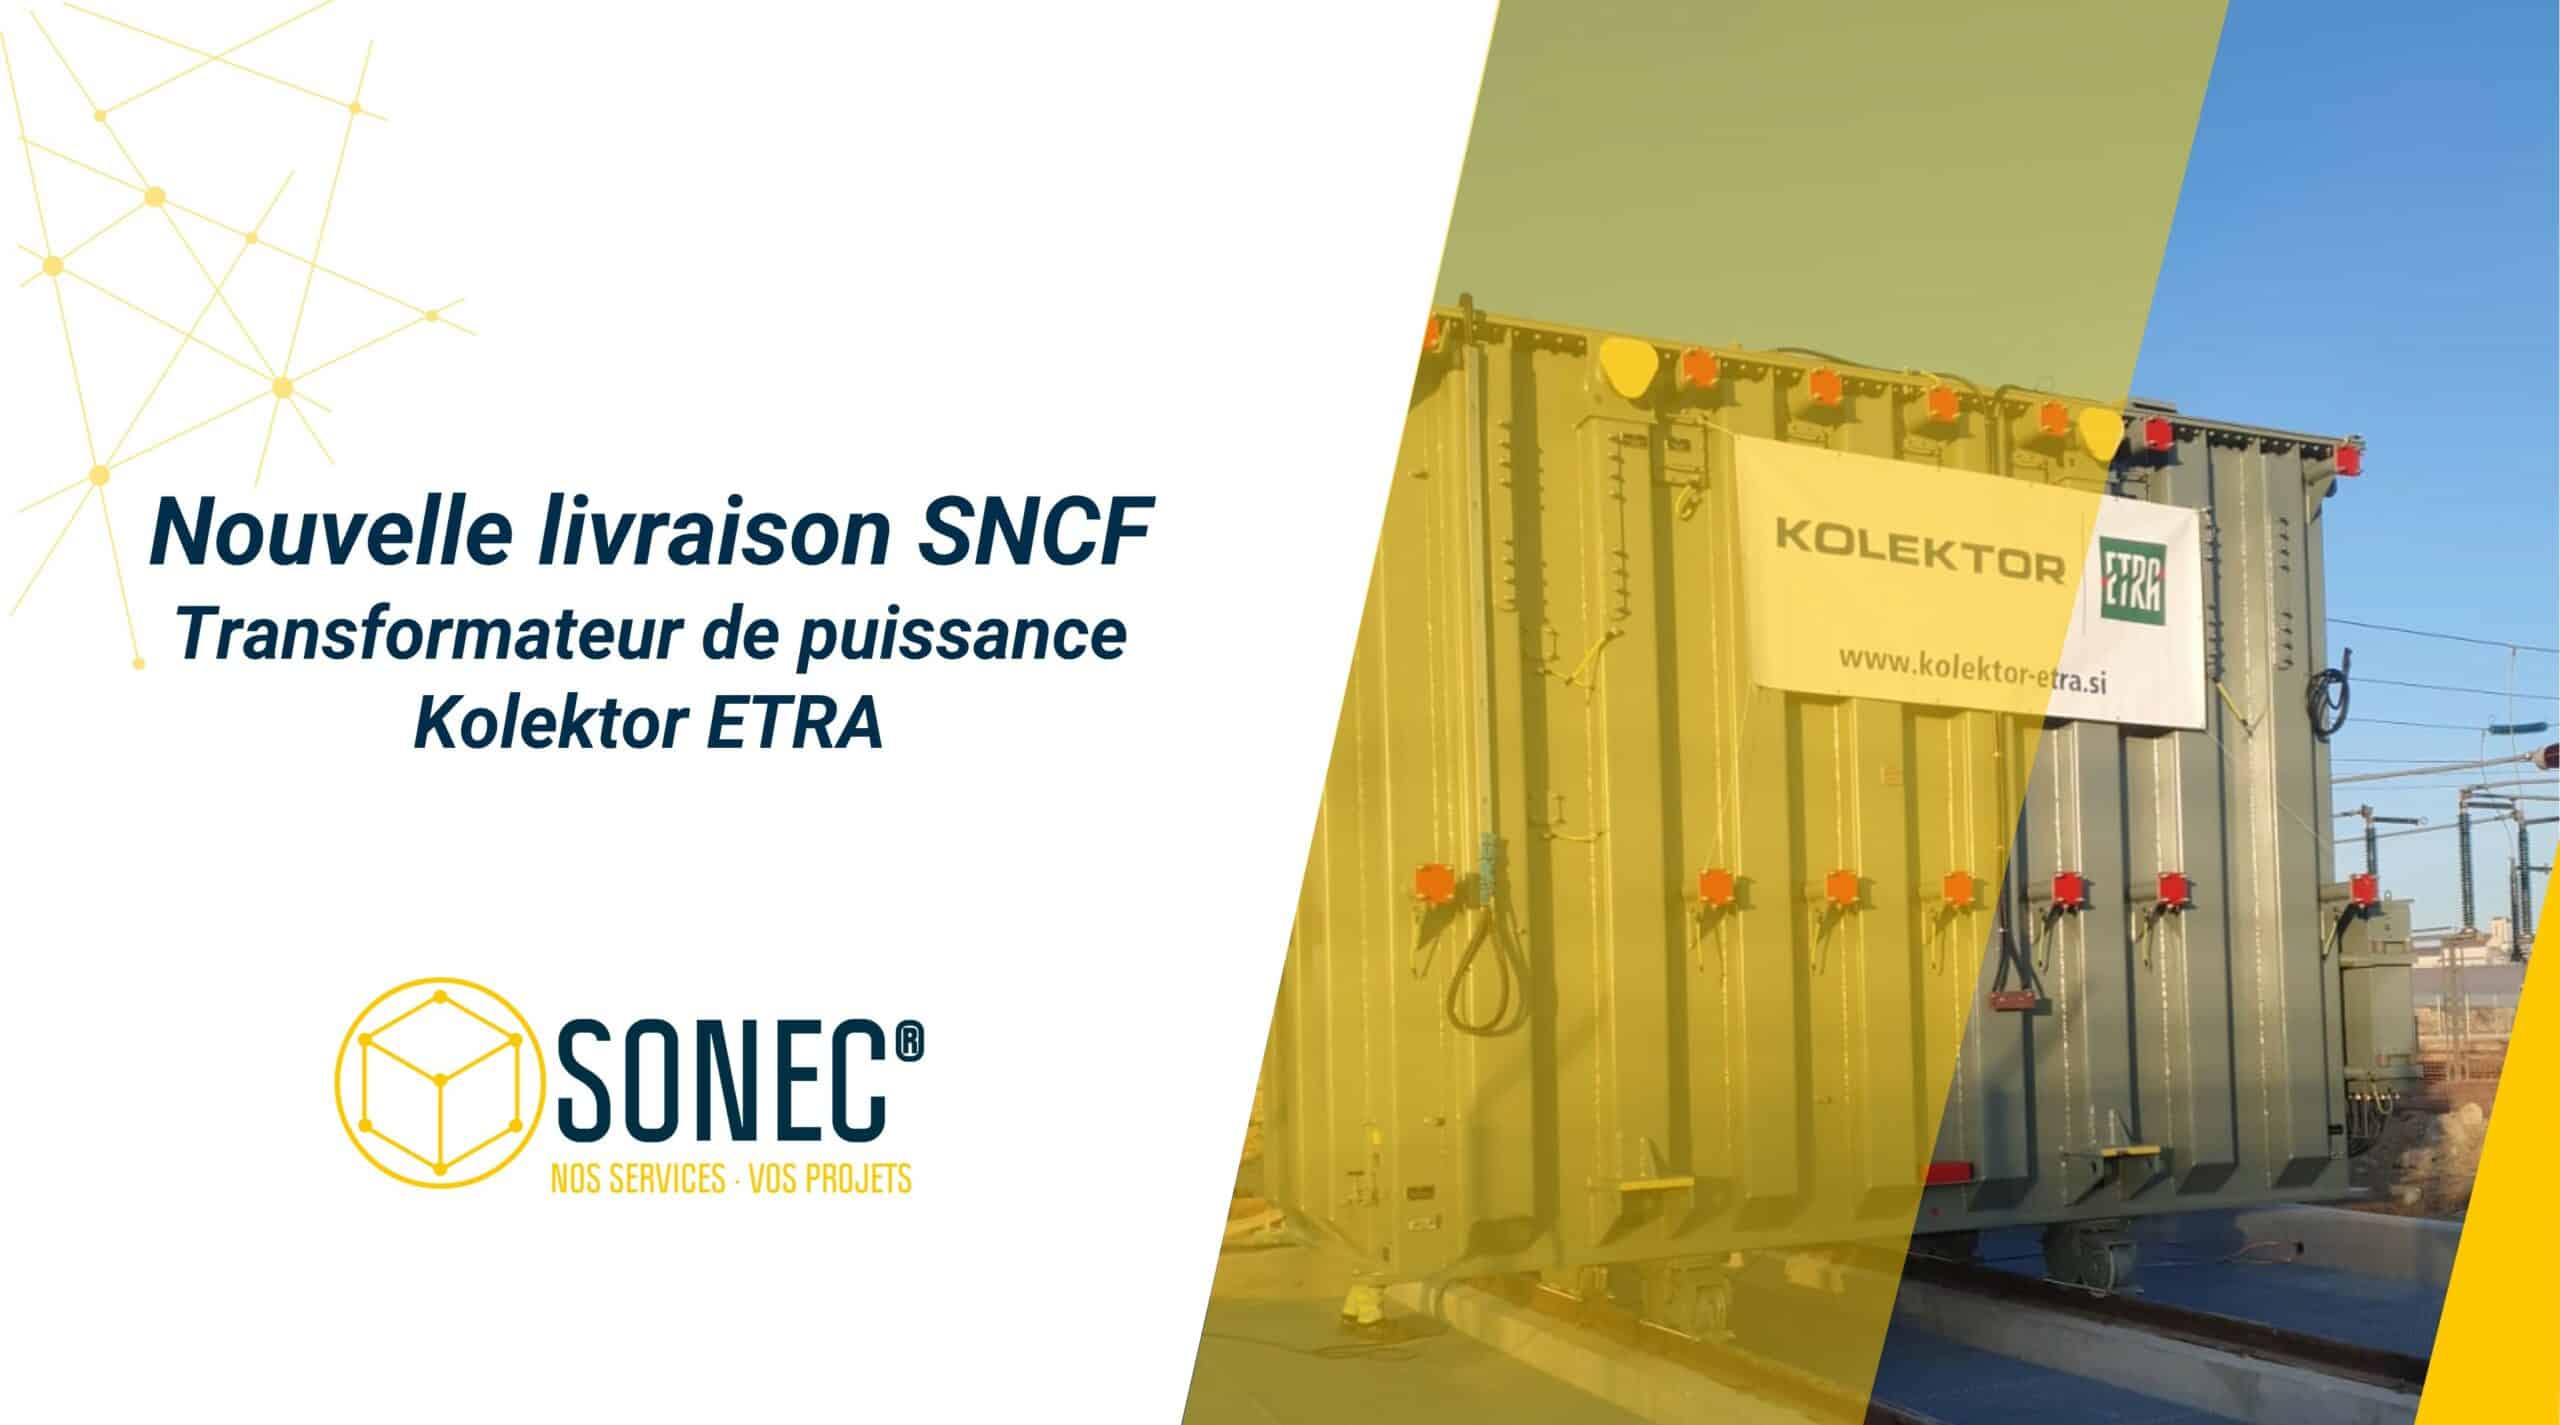 SONEC® es la primera empresa europea que ha obtenido la etiqueta KESA para la supervisión del montaje de los transformadores eléctricos Kolektor ETRA.